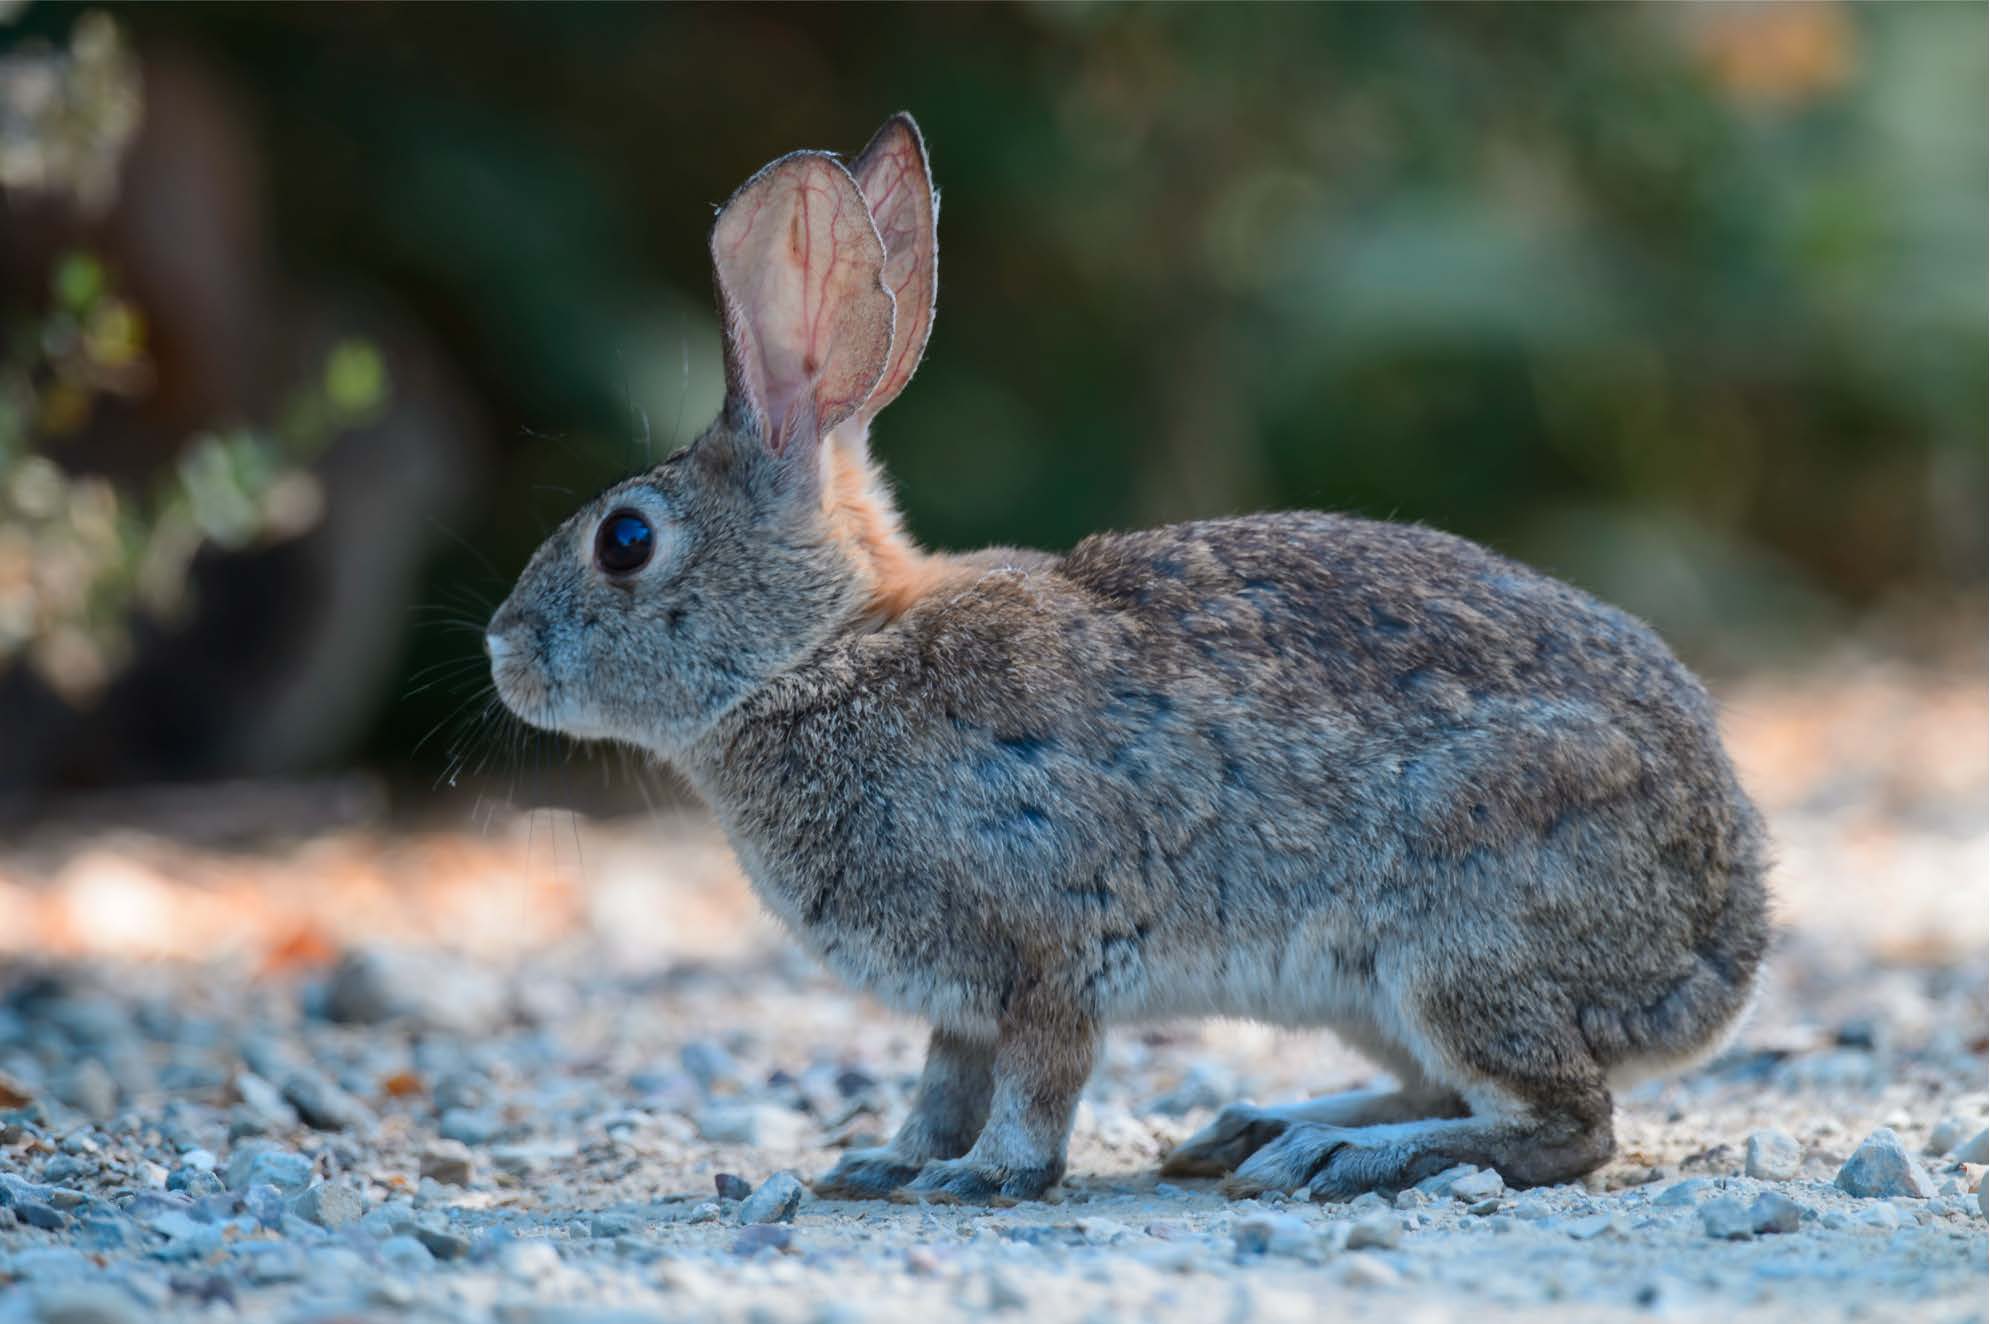 riparian brush rabbit in habitat